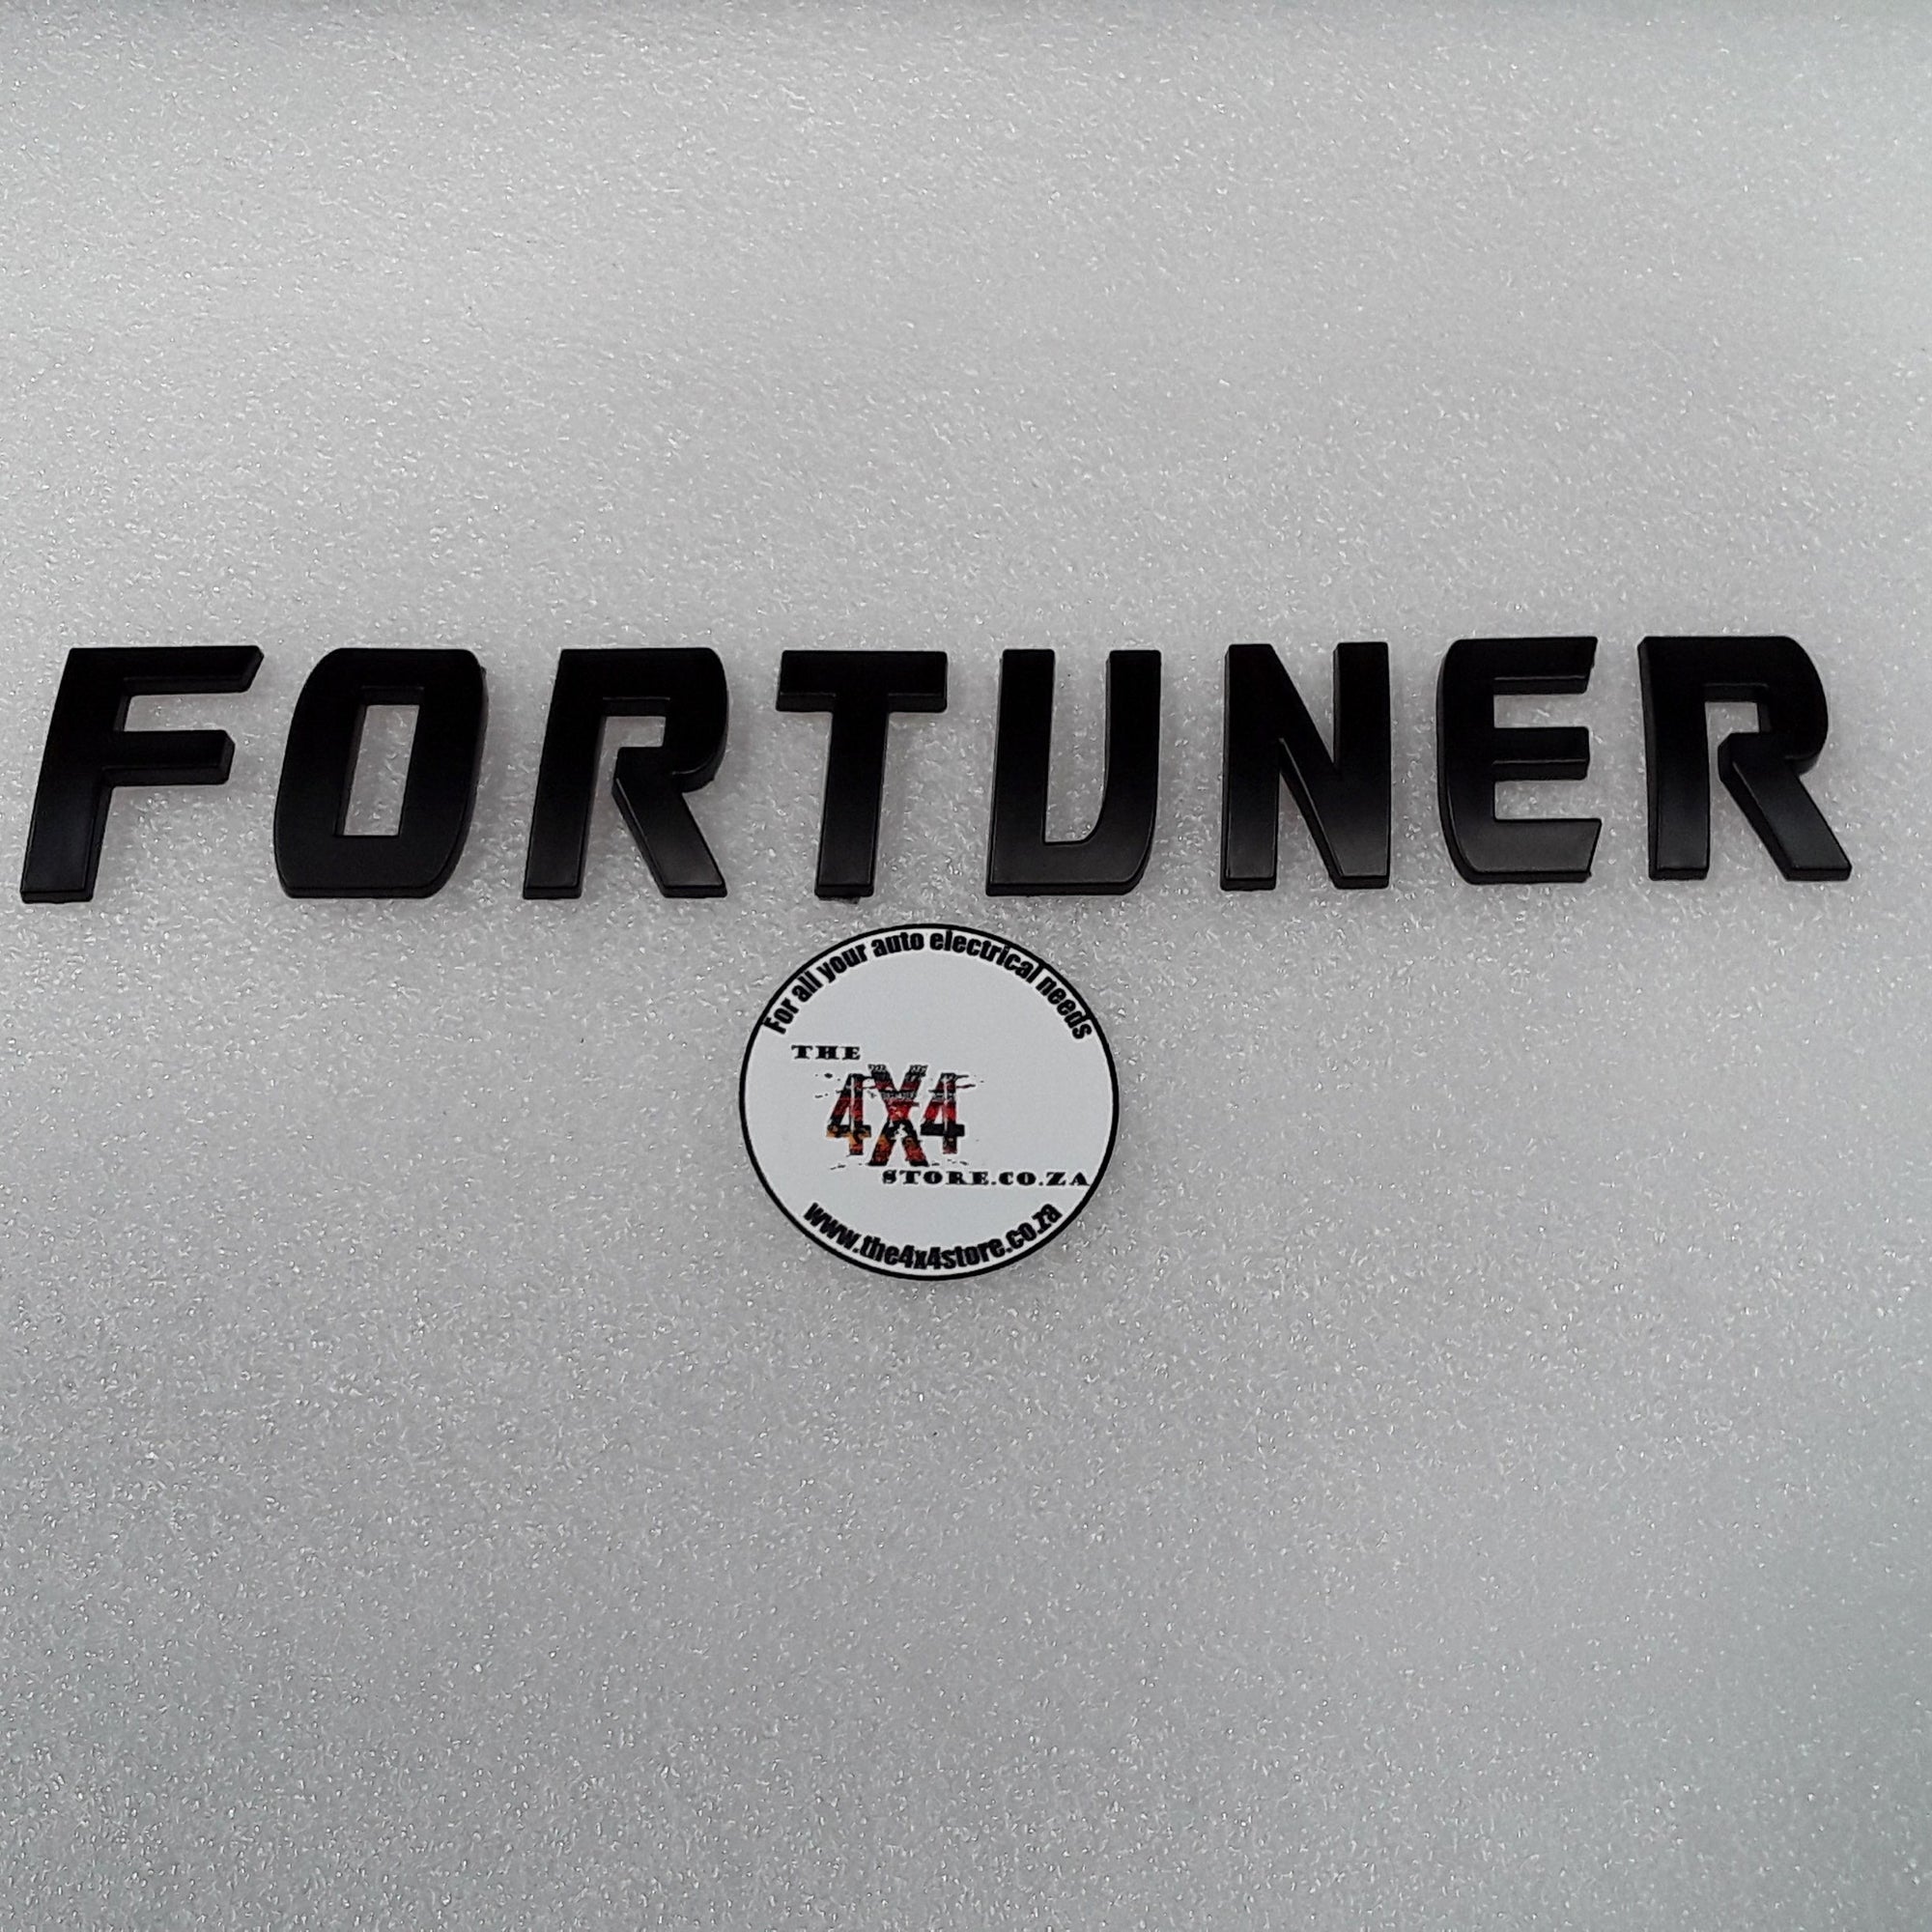 Toyota Fortuner 3D bonnet logo - letter size 50 mm